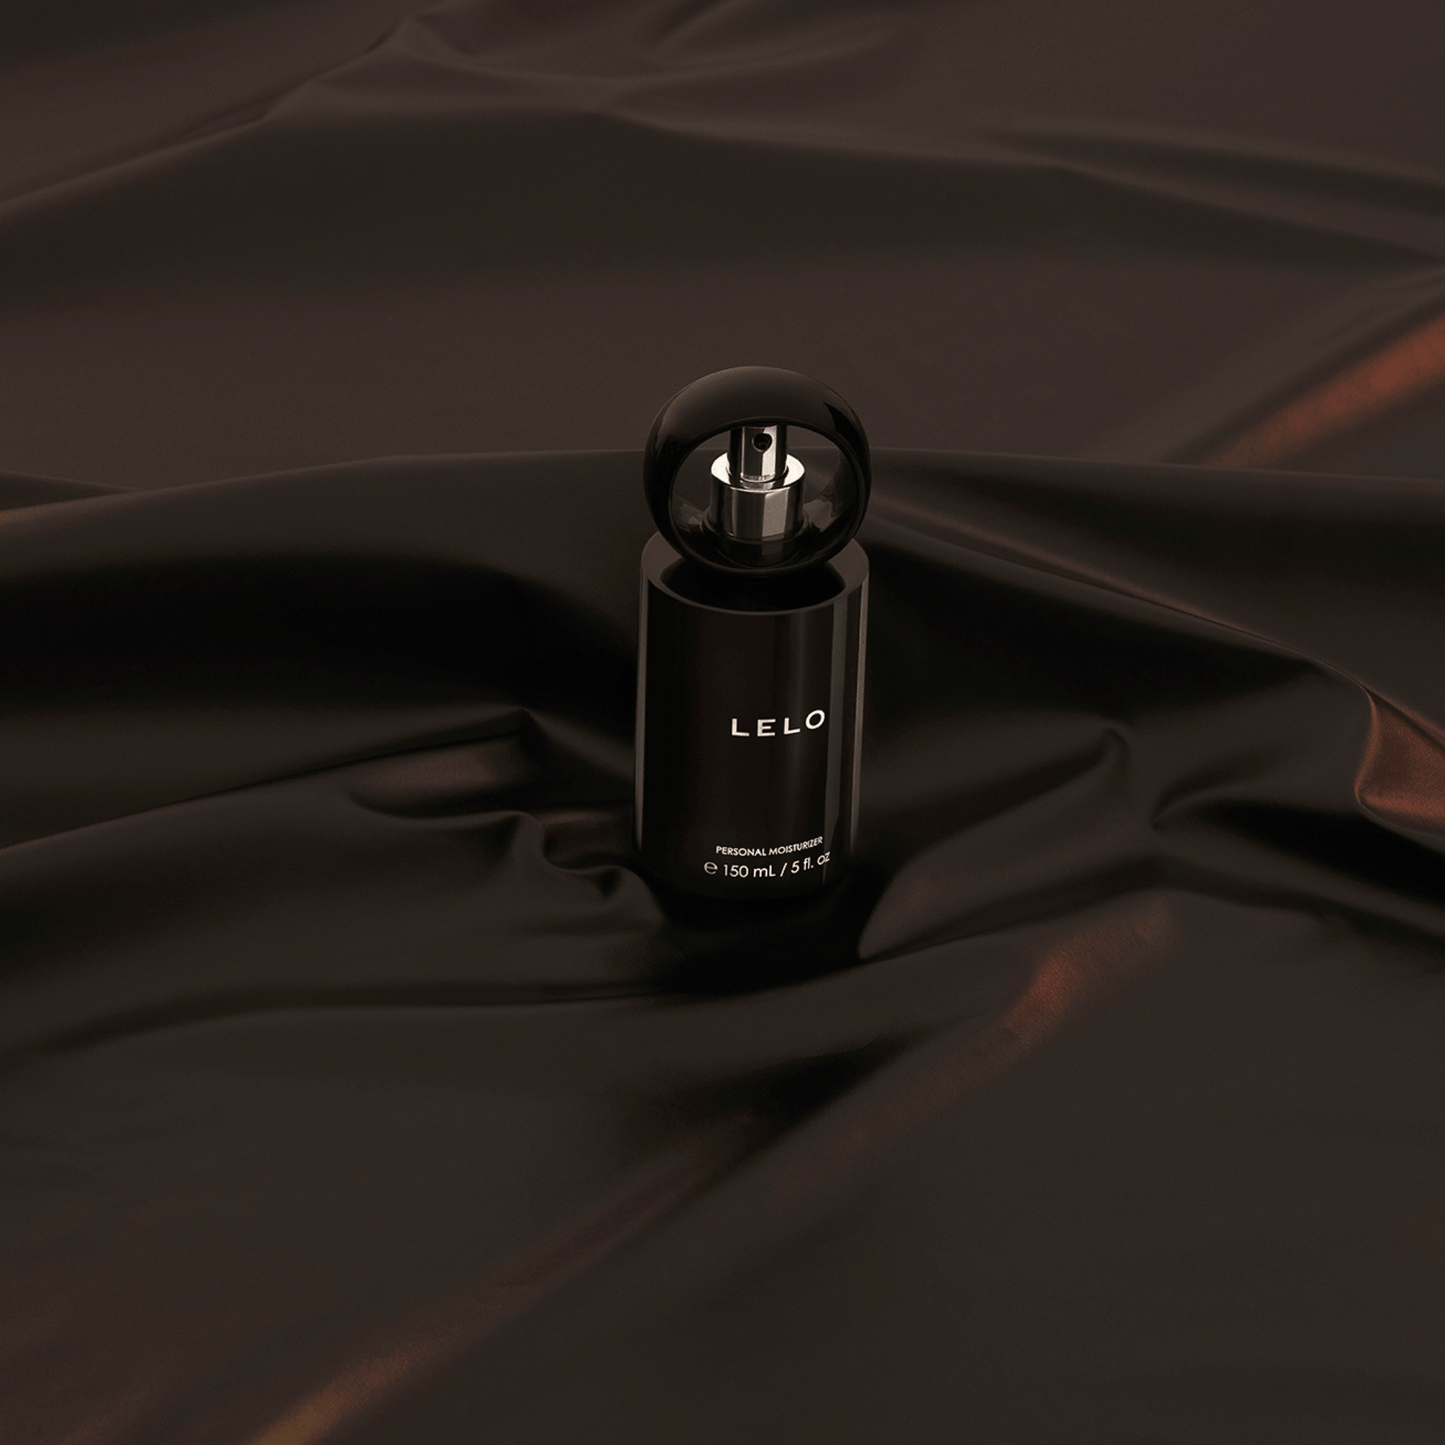 Bouteille élégante de lubrifiant intime LELO 150ml posée sur une soie luxueuse, disponible chez Oh My God'Z pour une expérience douce et sensuelle.